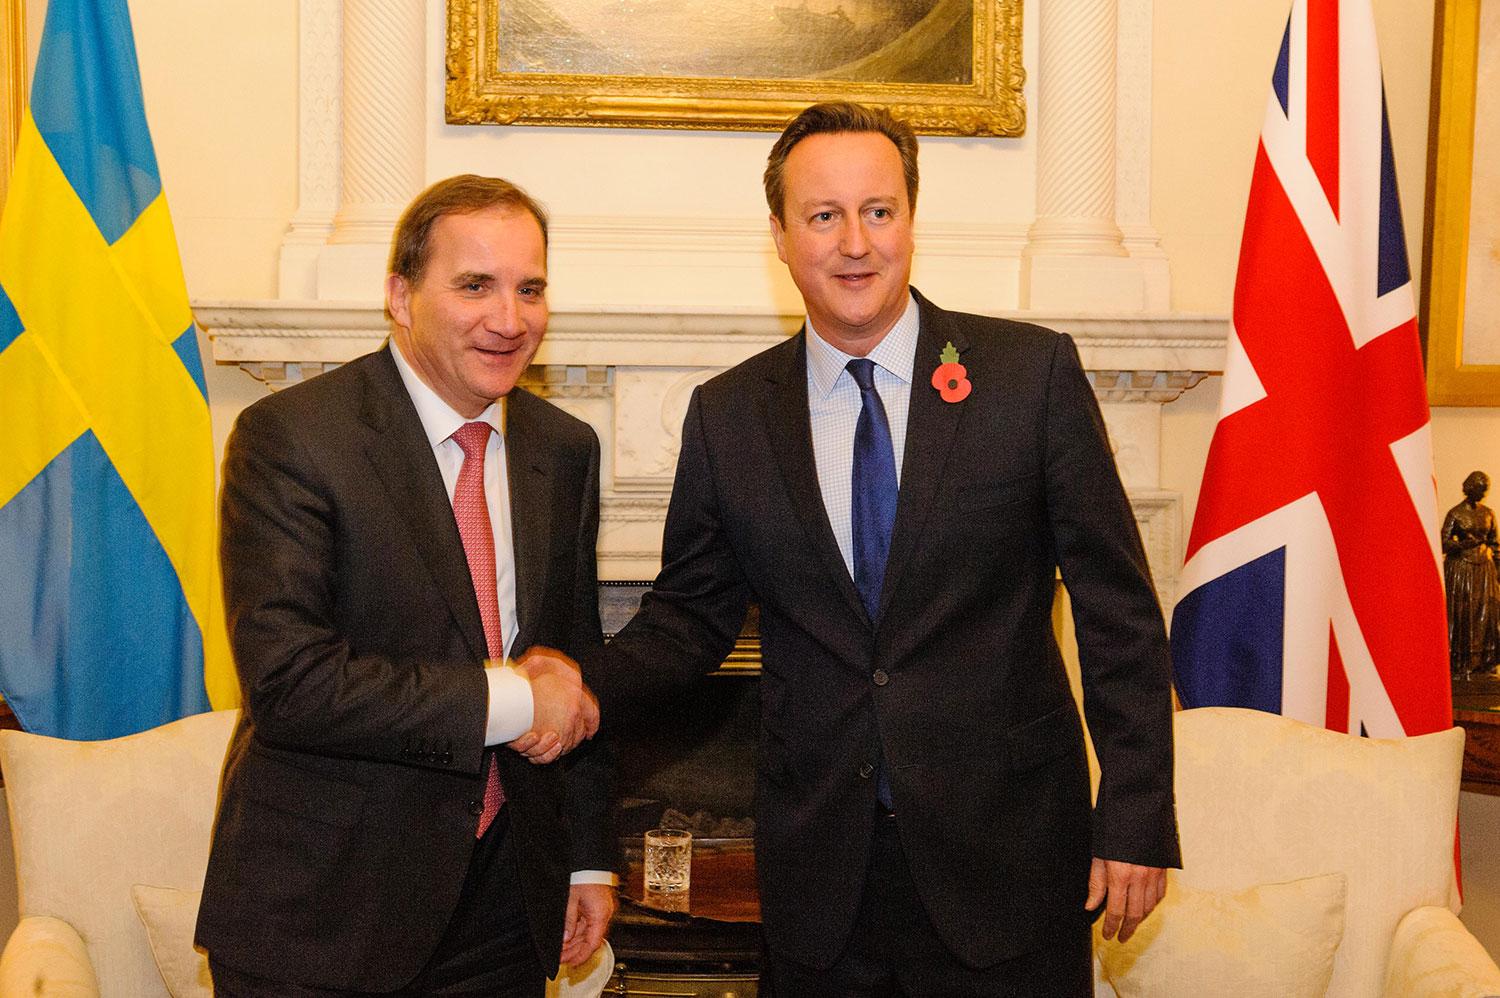 Stefan Löfven besökte i november Downing street och träffade då David Cameron, Storbritanniens premiärminister.